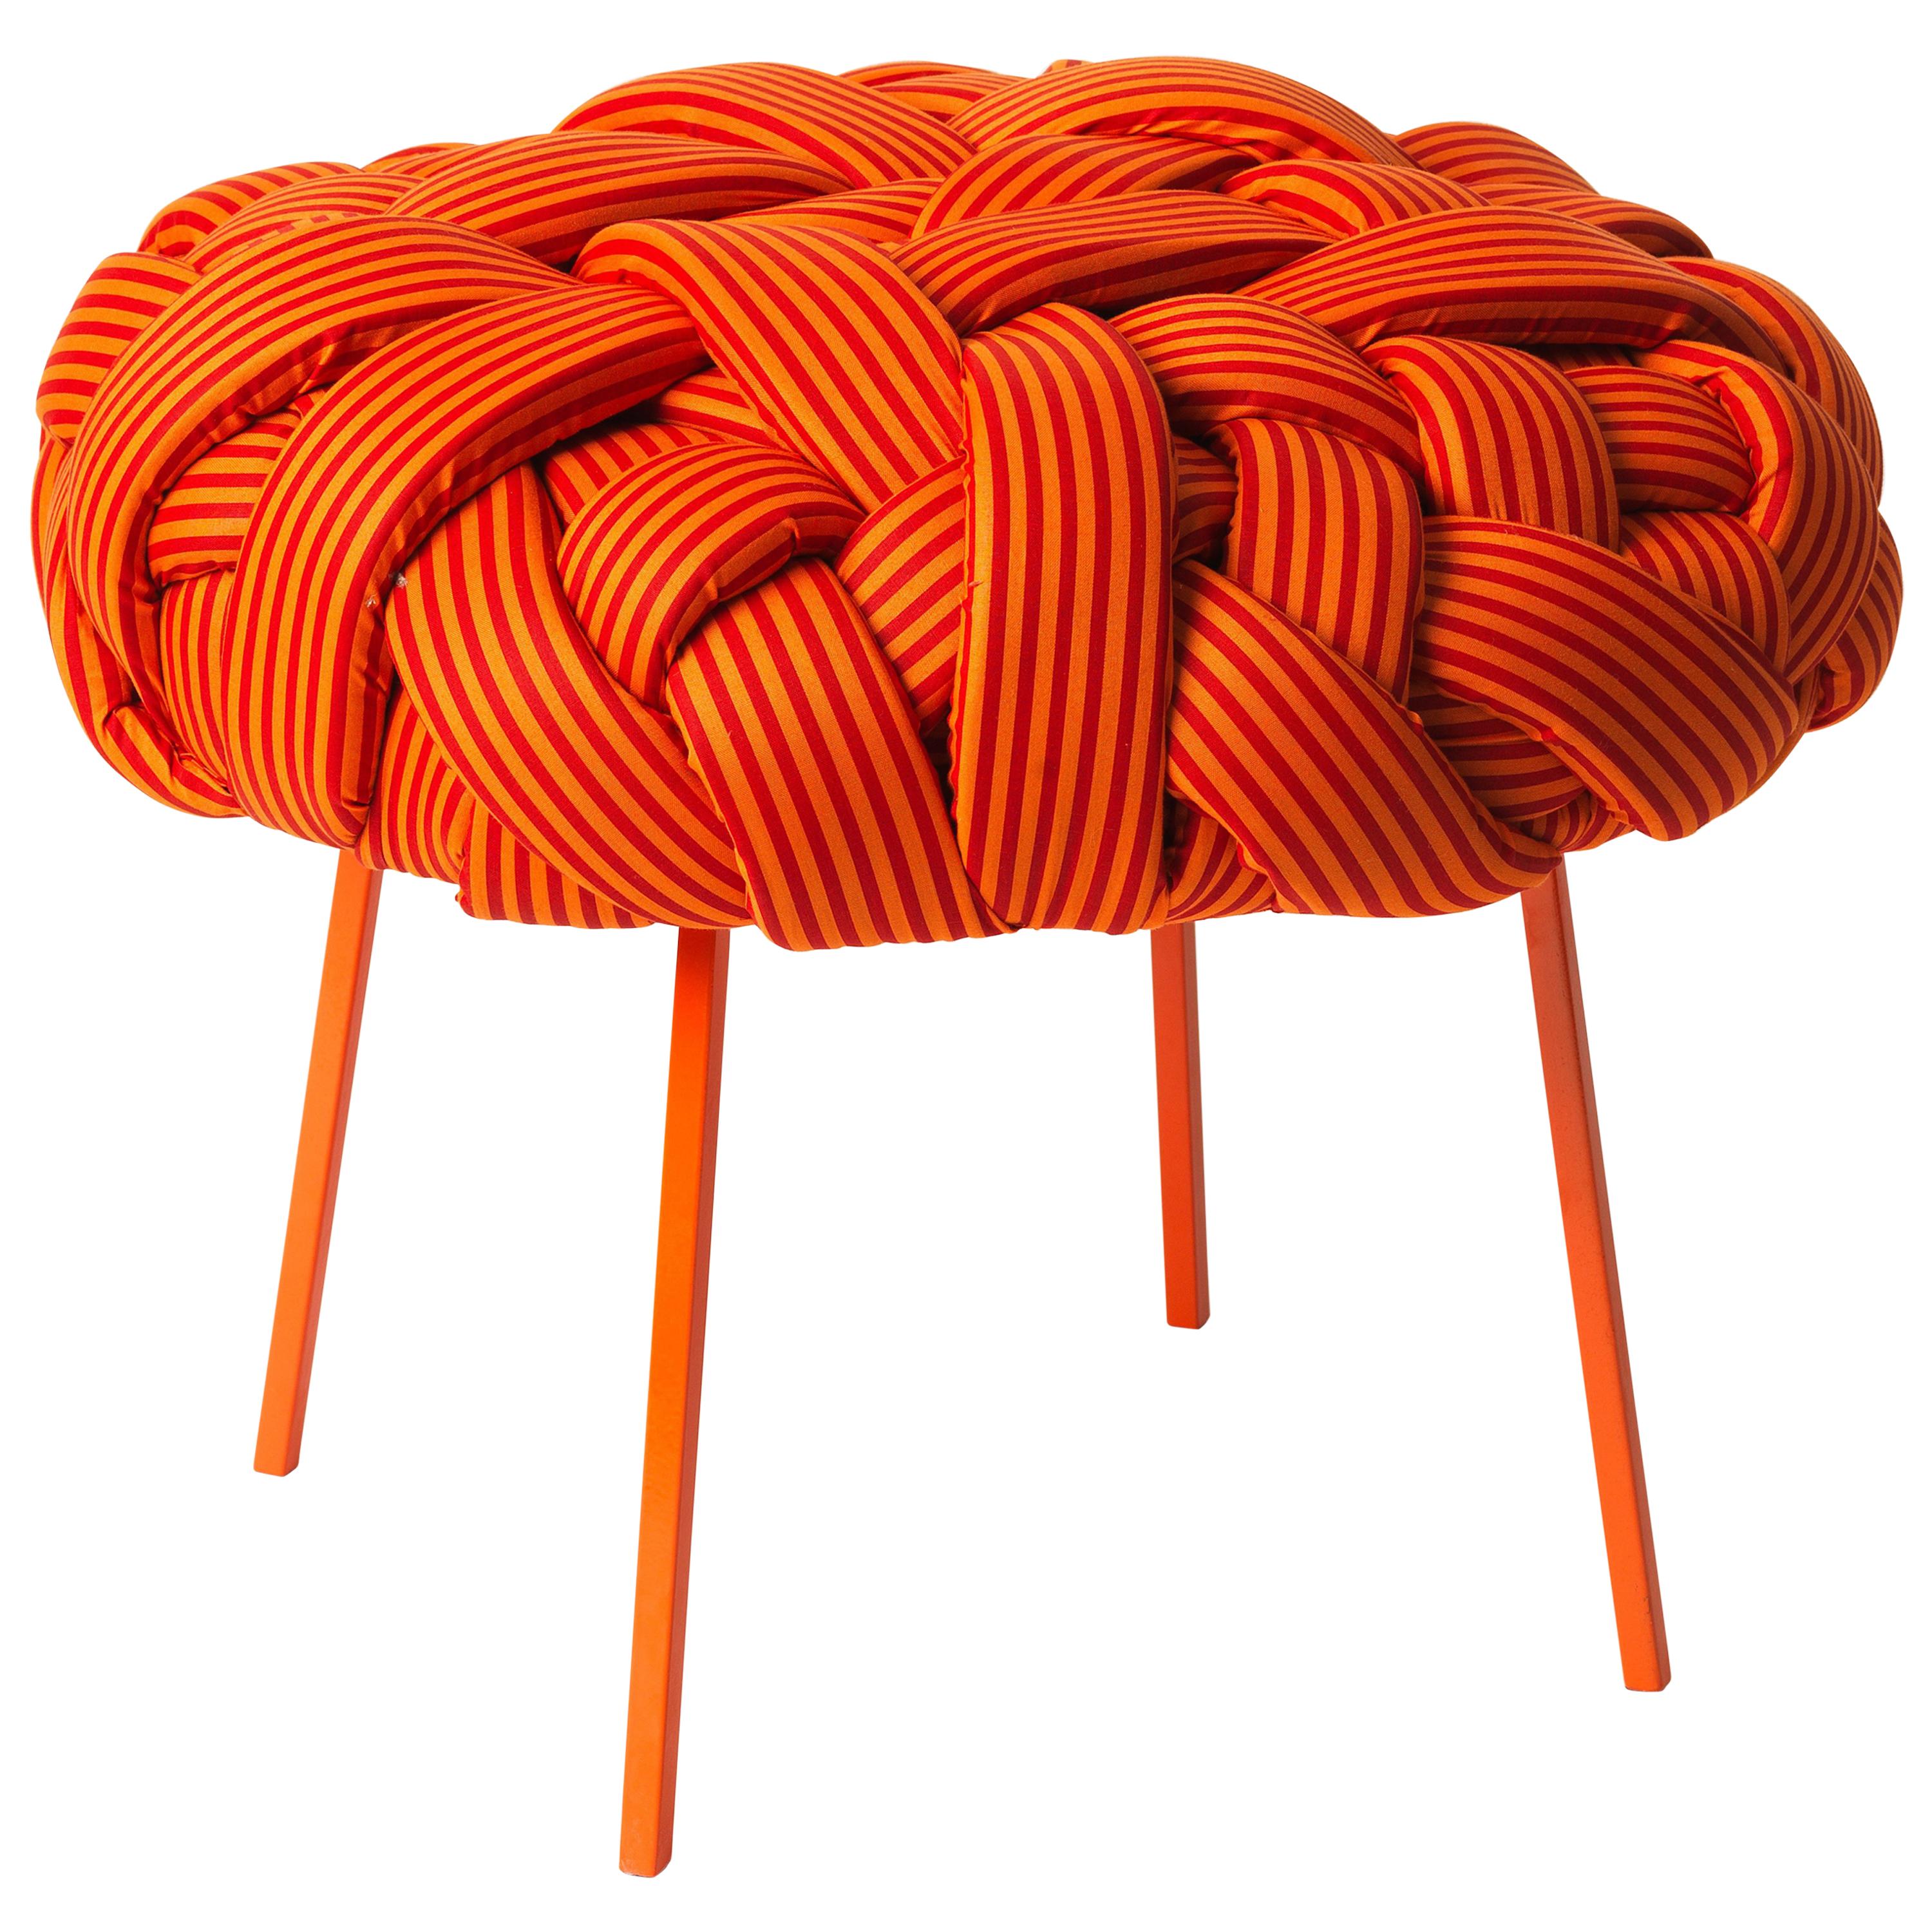 Tabouret contemporain tissé à la main - Tabouret nuage, moyen, orange